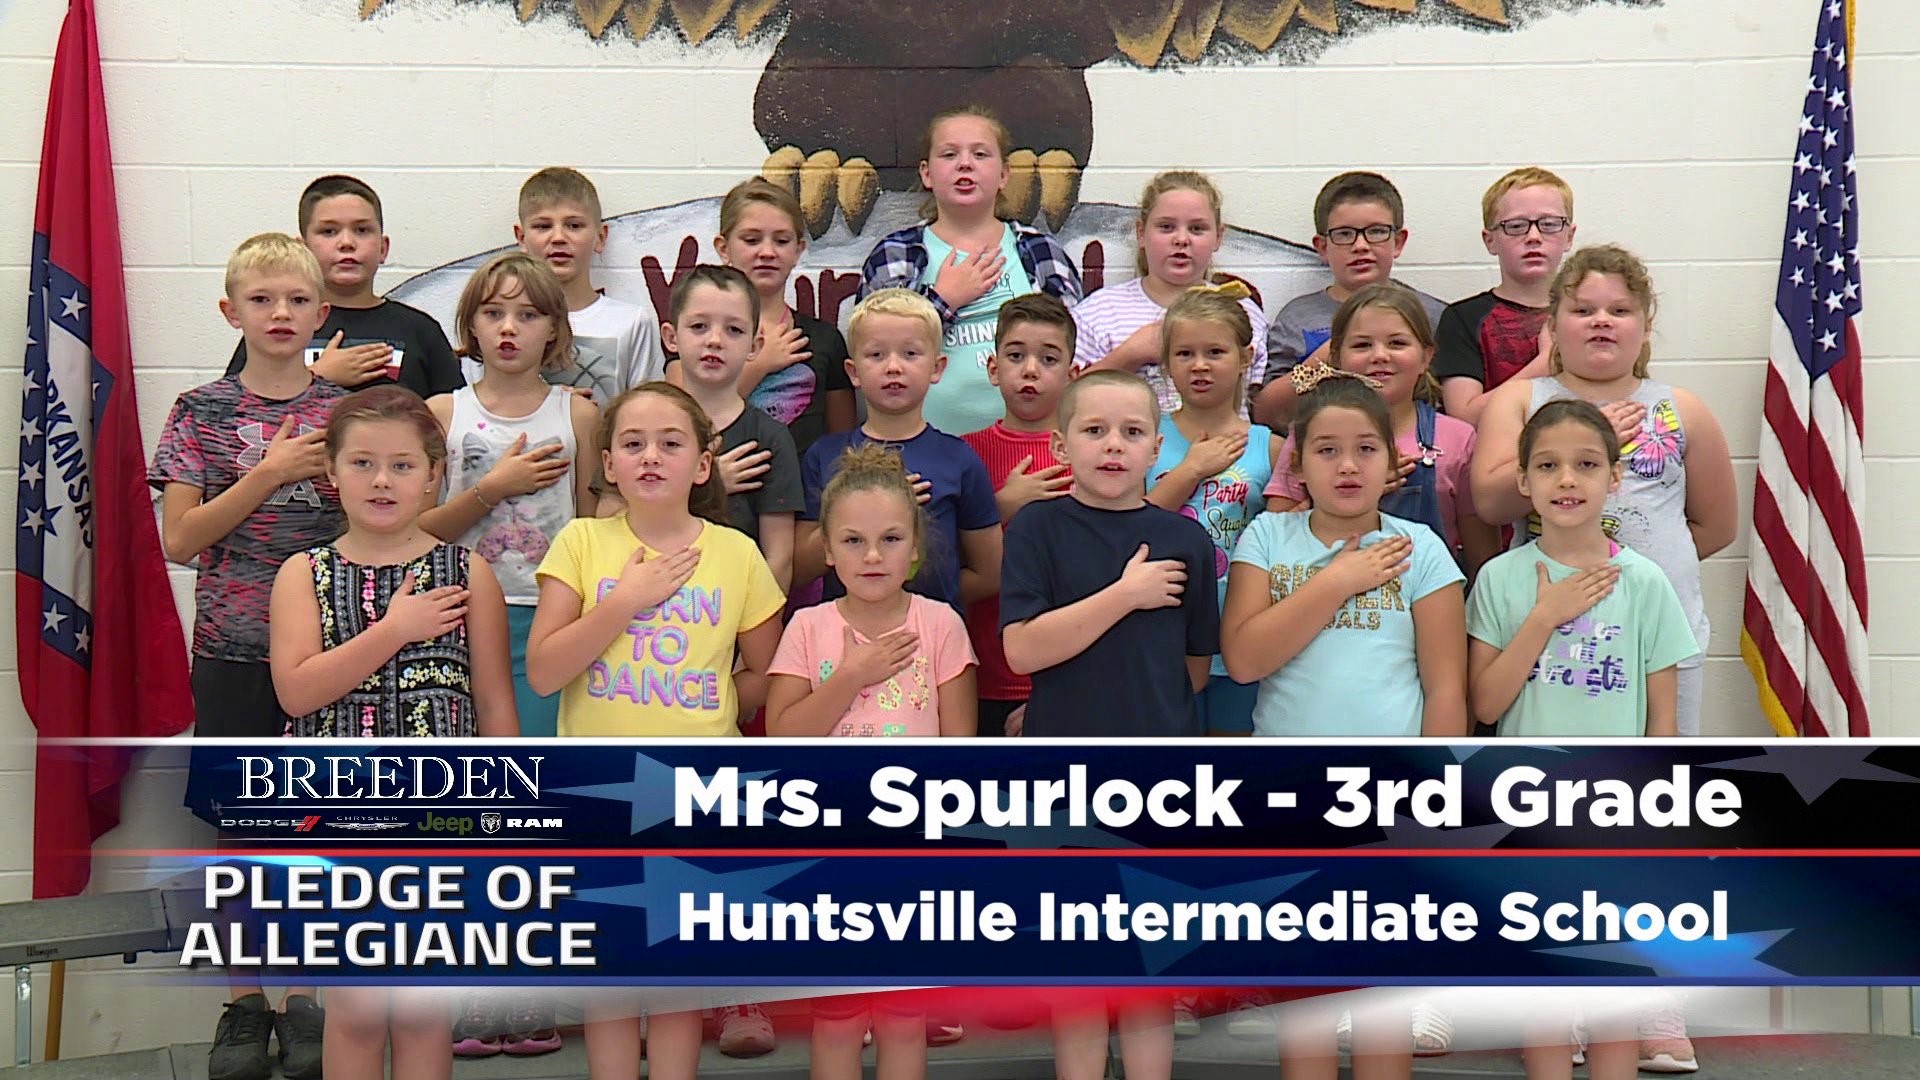 Mrs. Spurlock  3rd Grade Huntsville Intermedia School